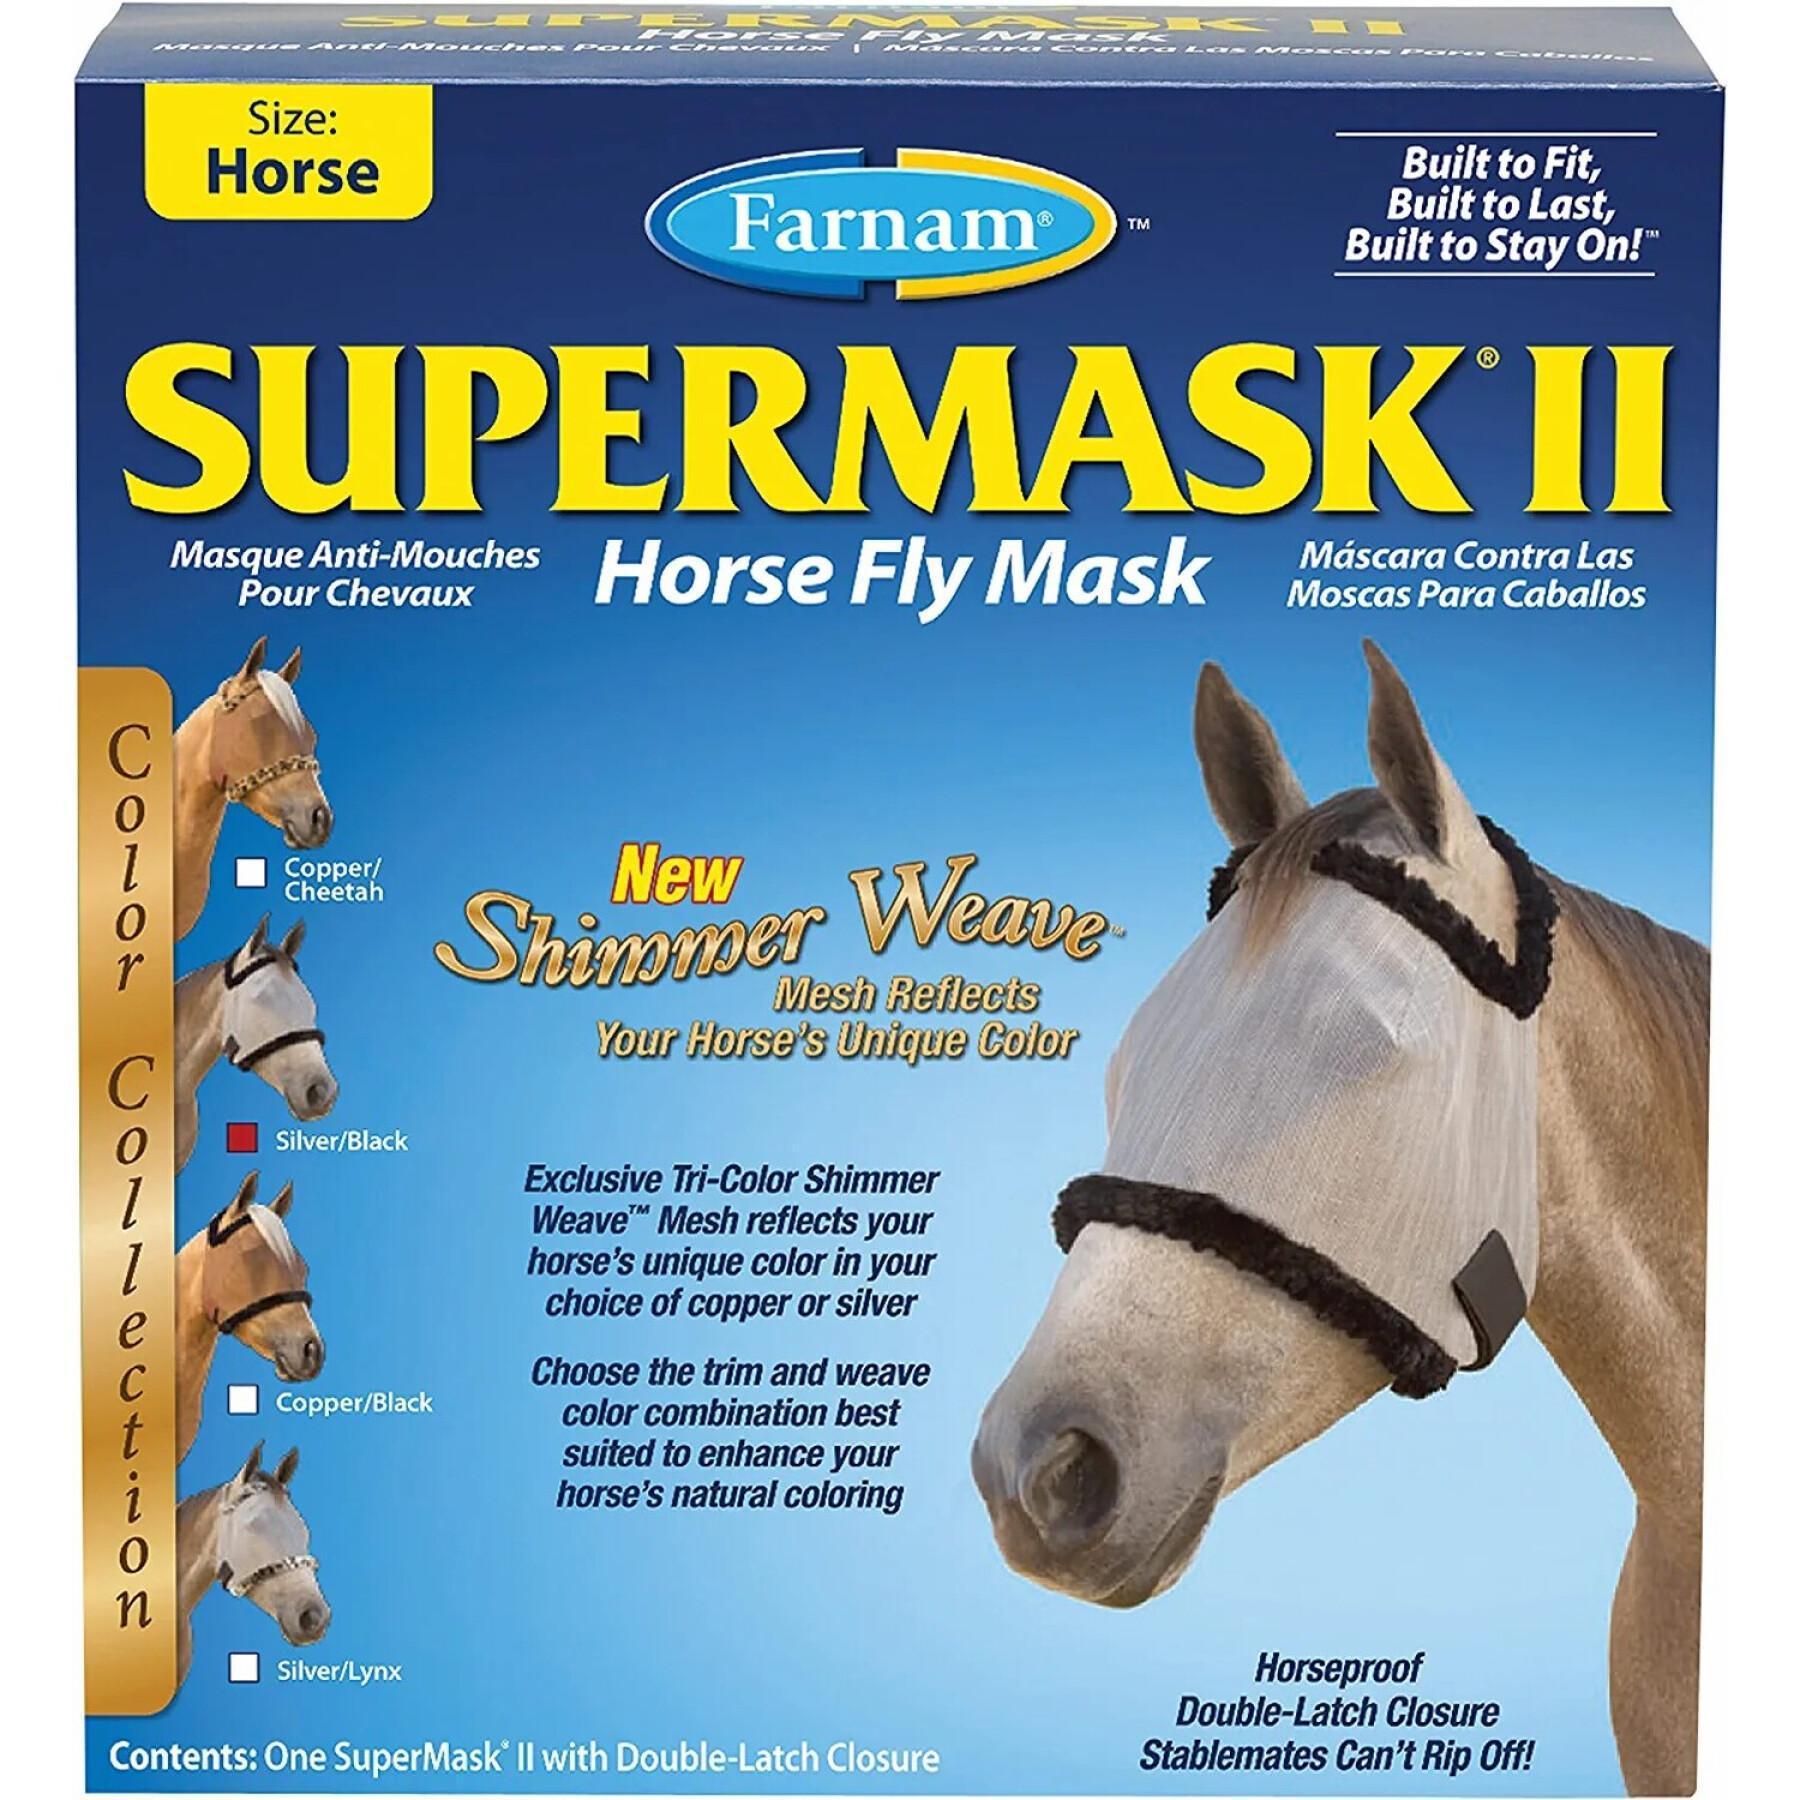 Masque anti-mouches pour cheval sans oreilles Farnam Supermask II Horse horse